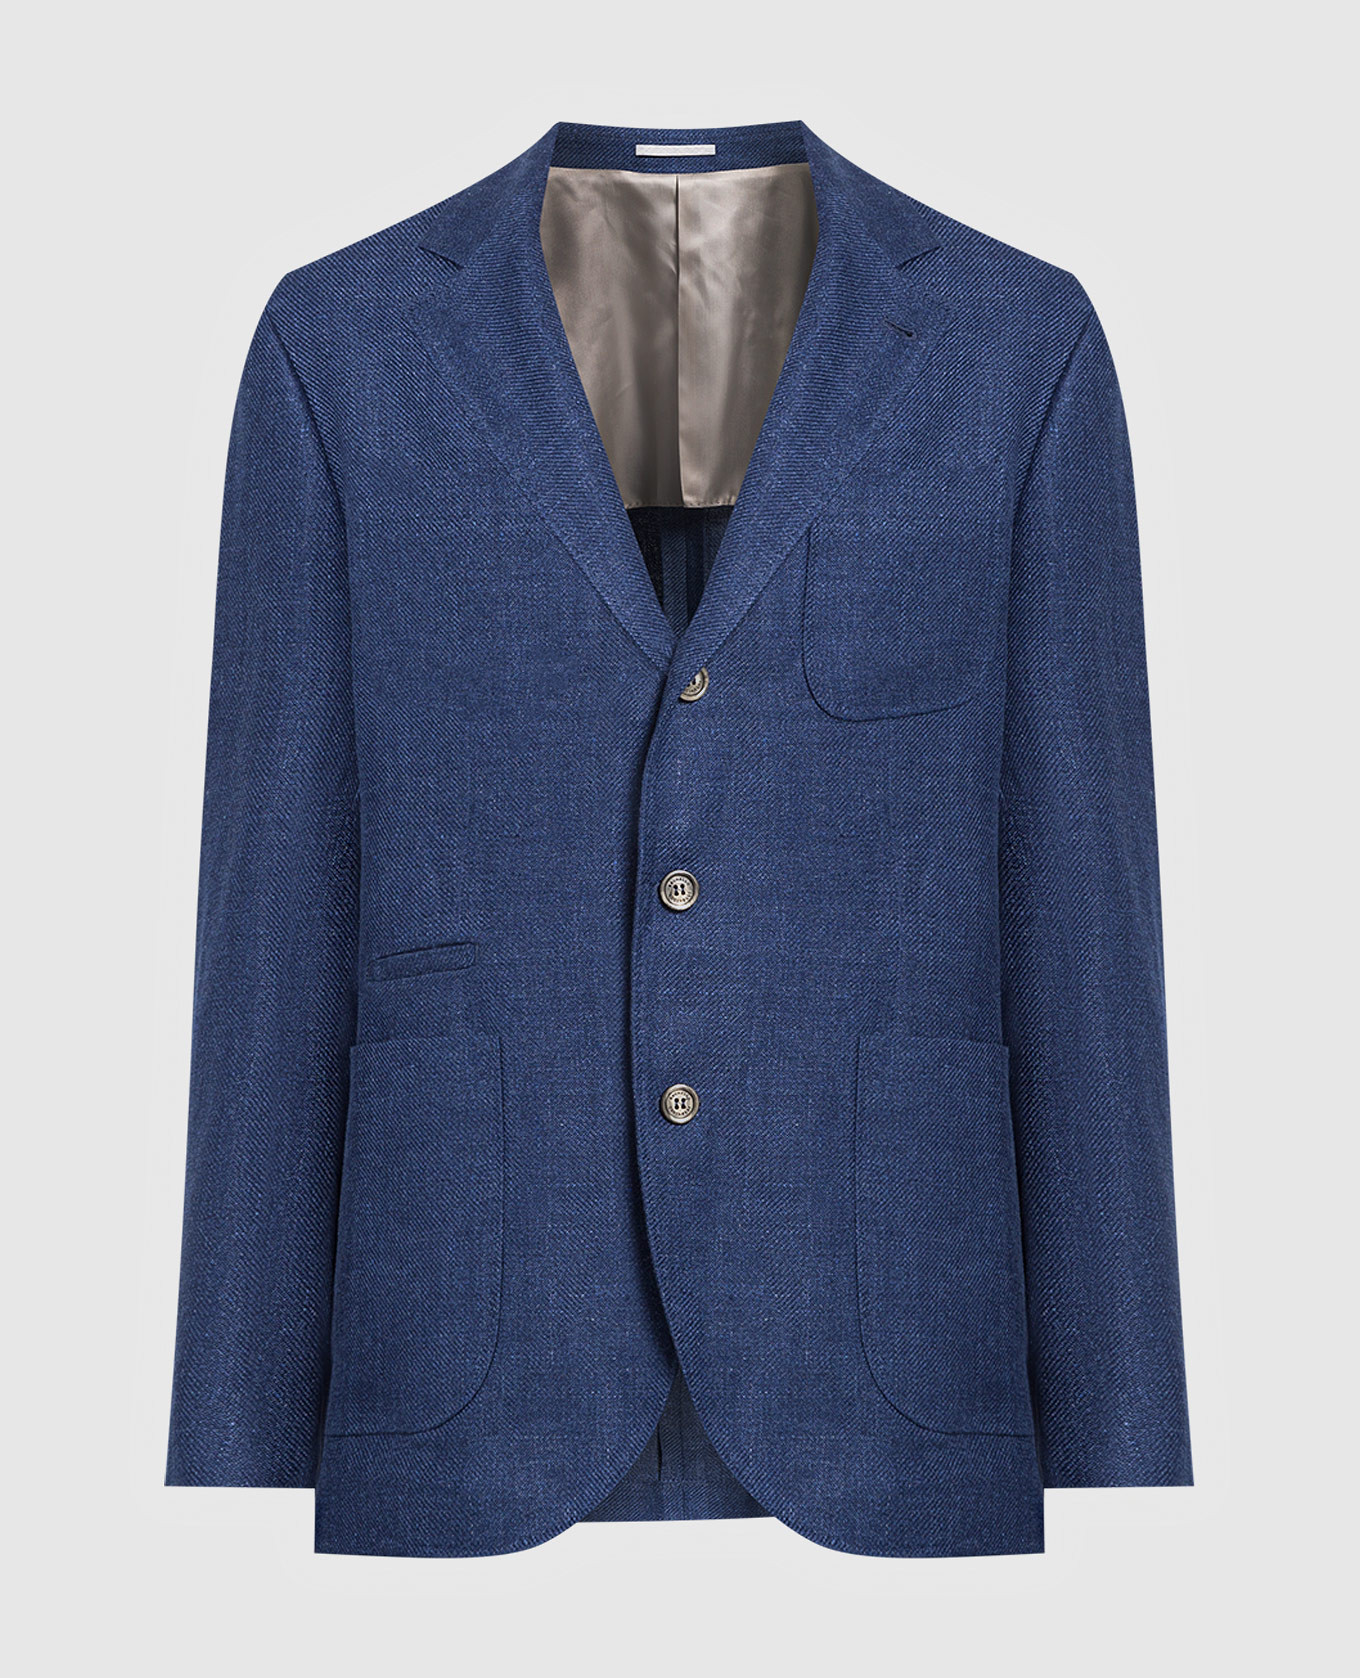 Blue linen and wool blazer